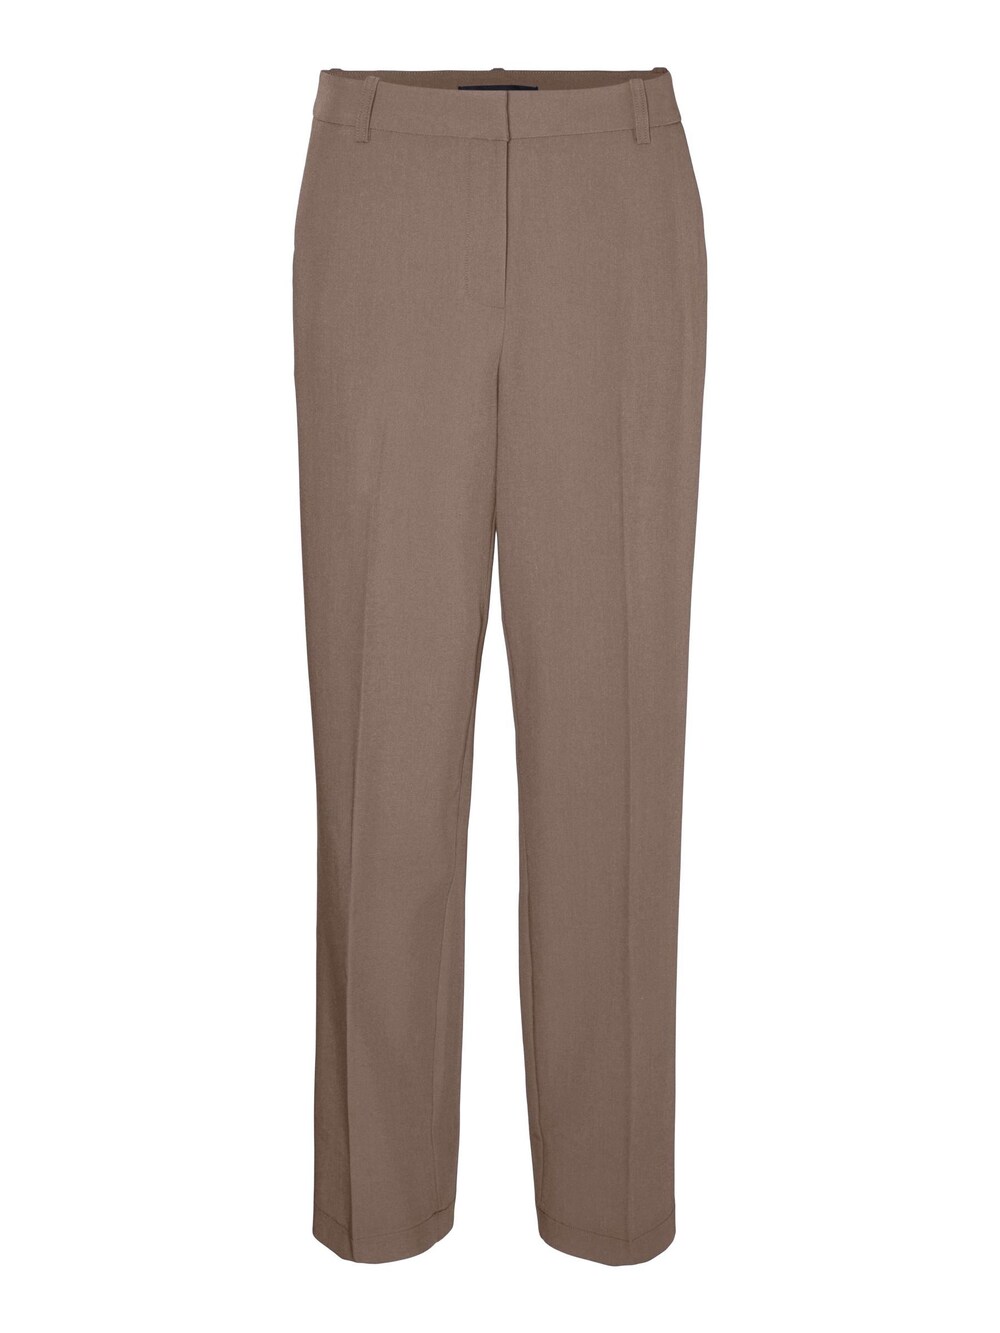 Обычные плиссированные брюки Vero Moda, коричневый